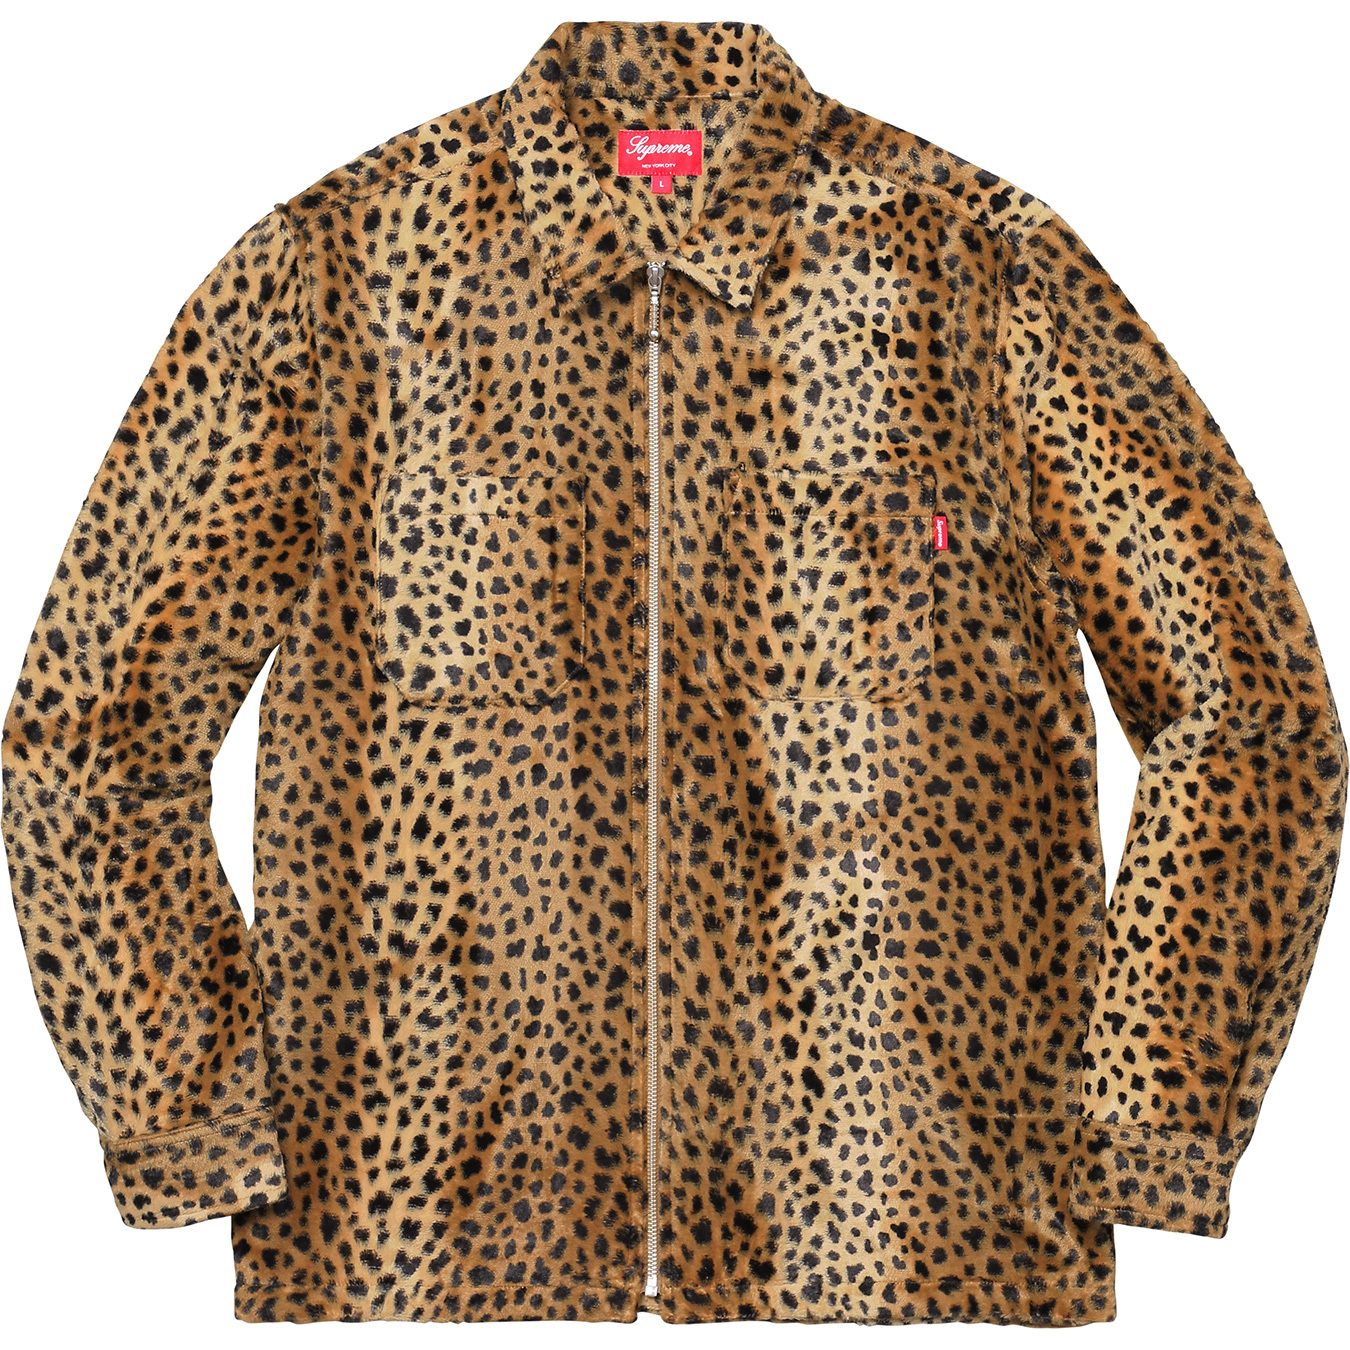 シャツsupreme cheetah pile zip up shirt S